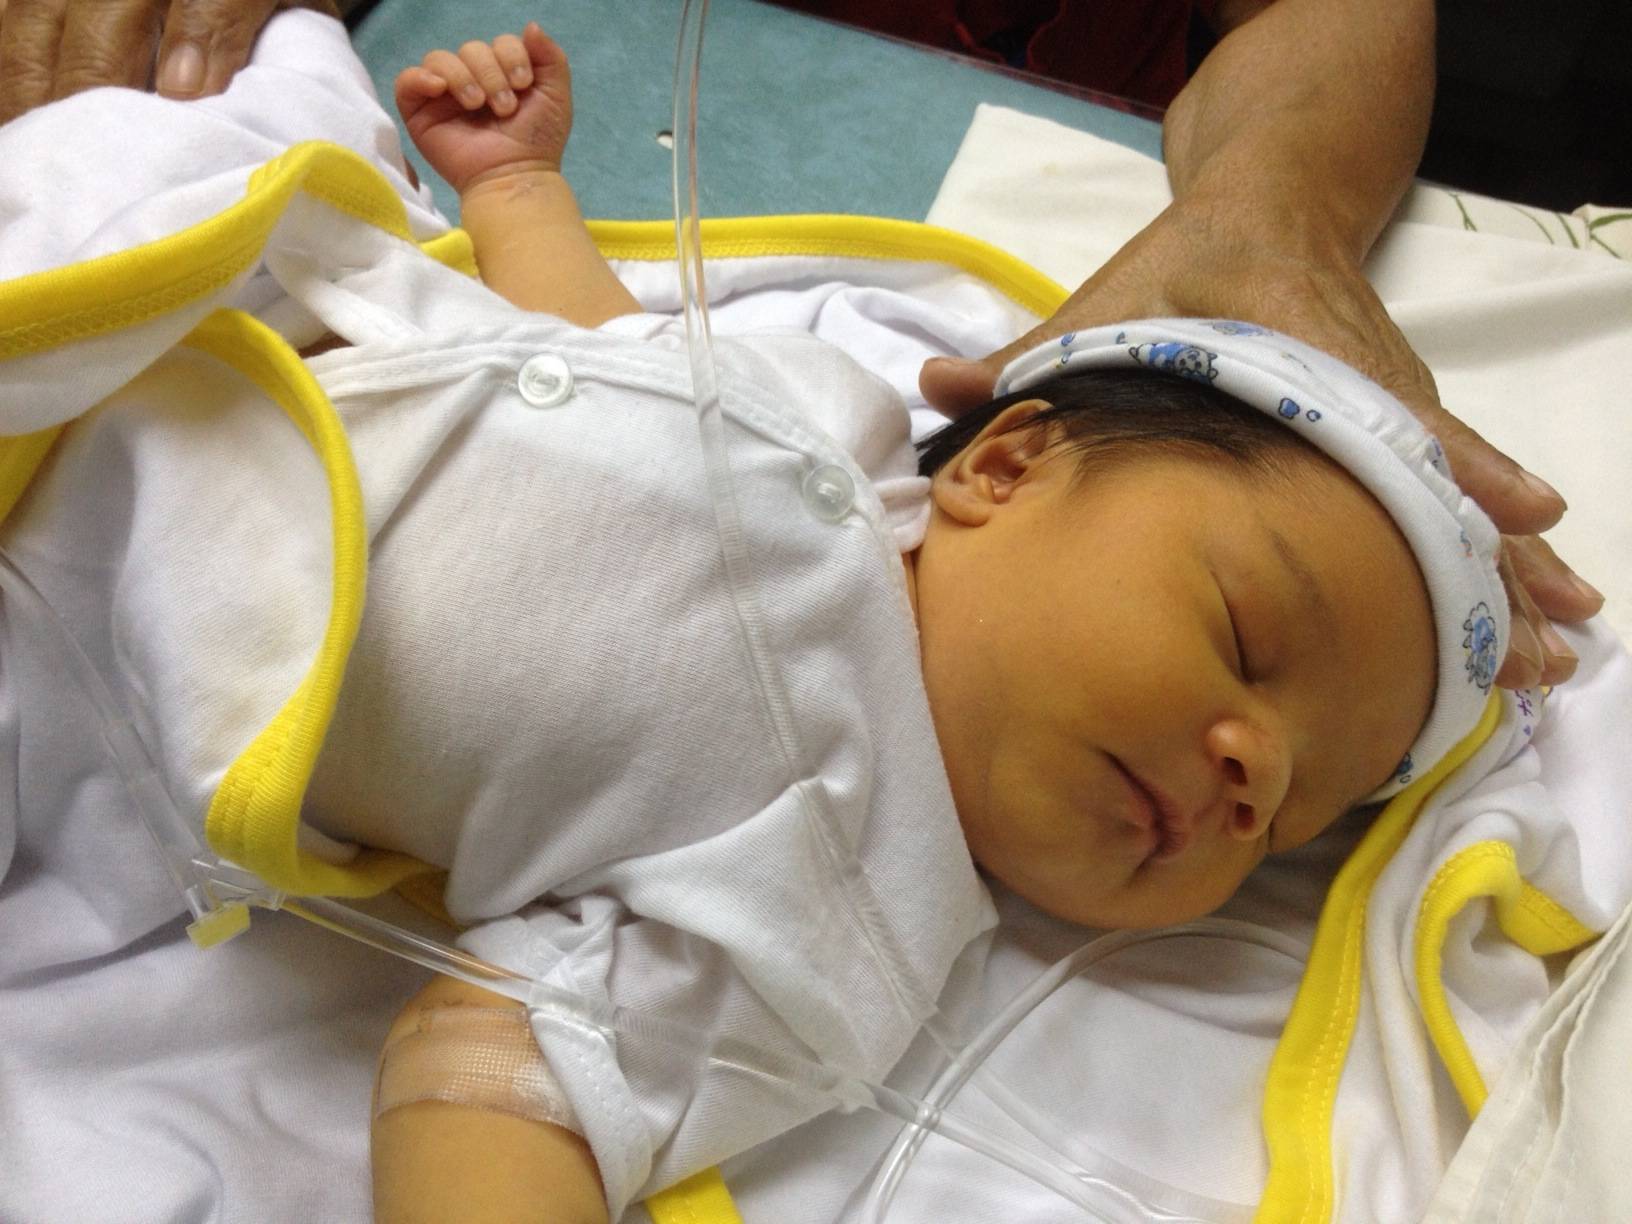 Билирубин у новорожденных: норма, отклонения, лечение желтухи